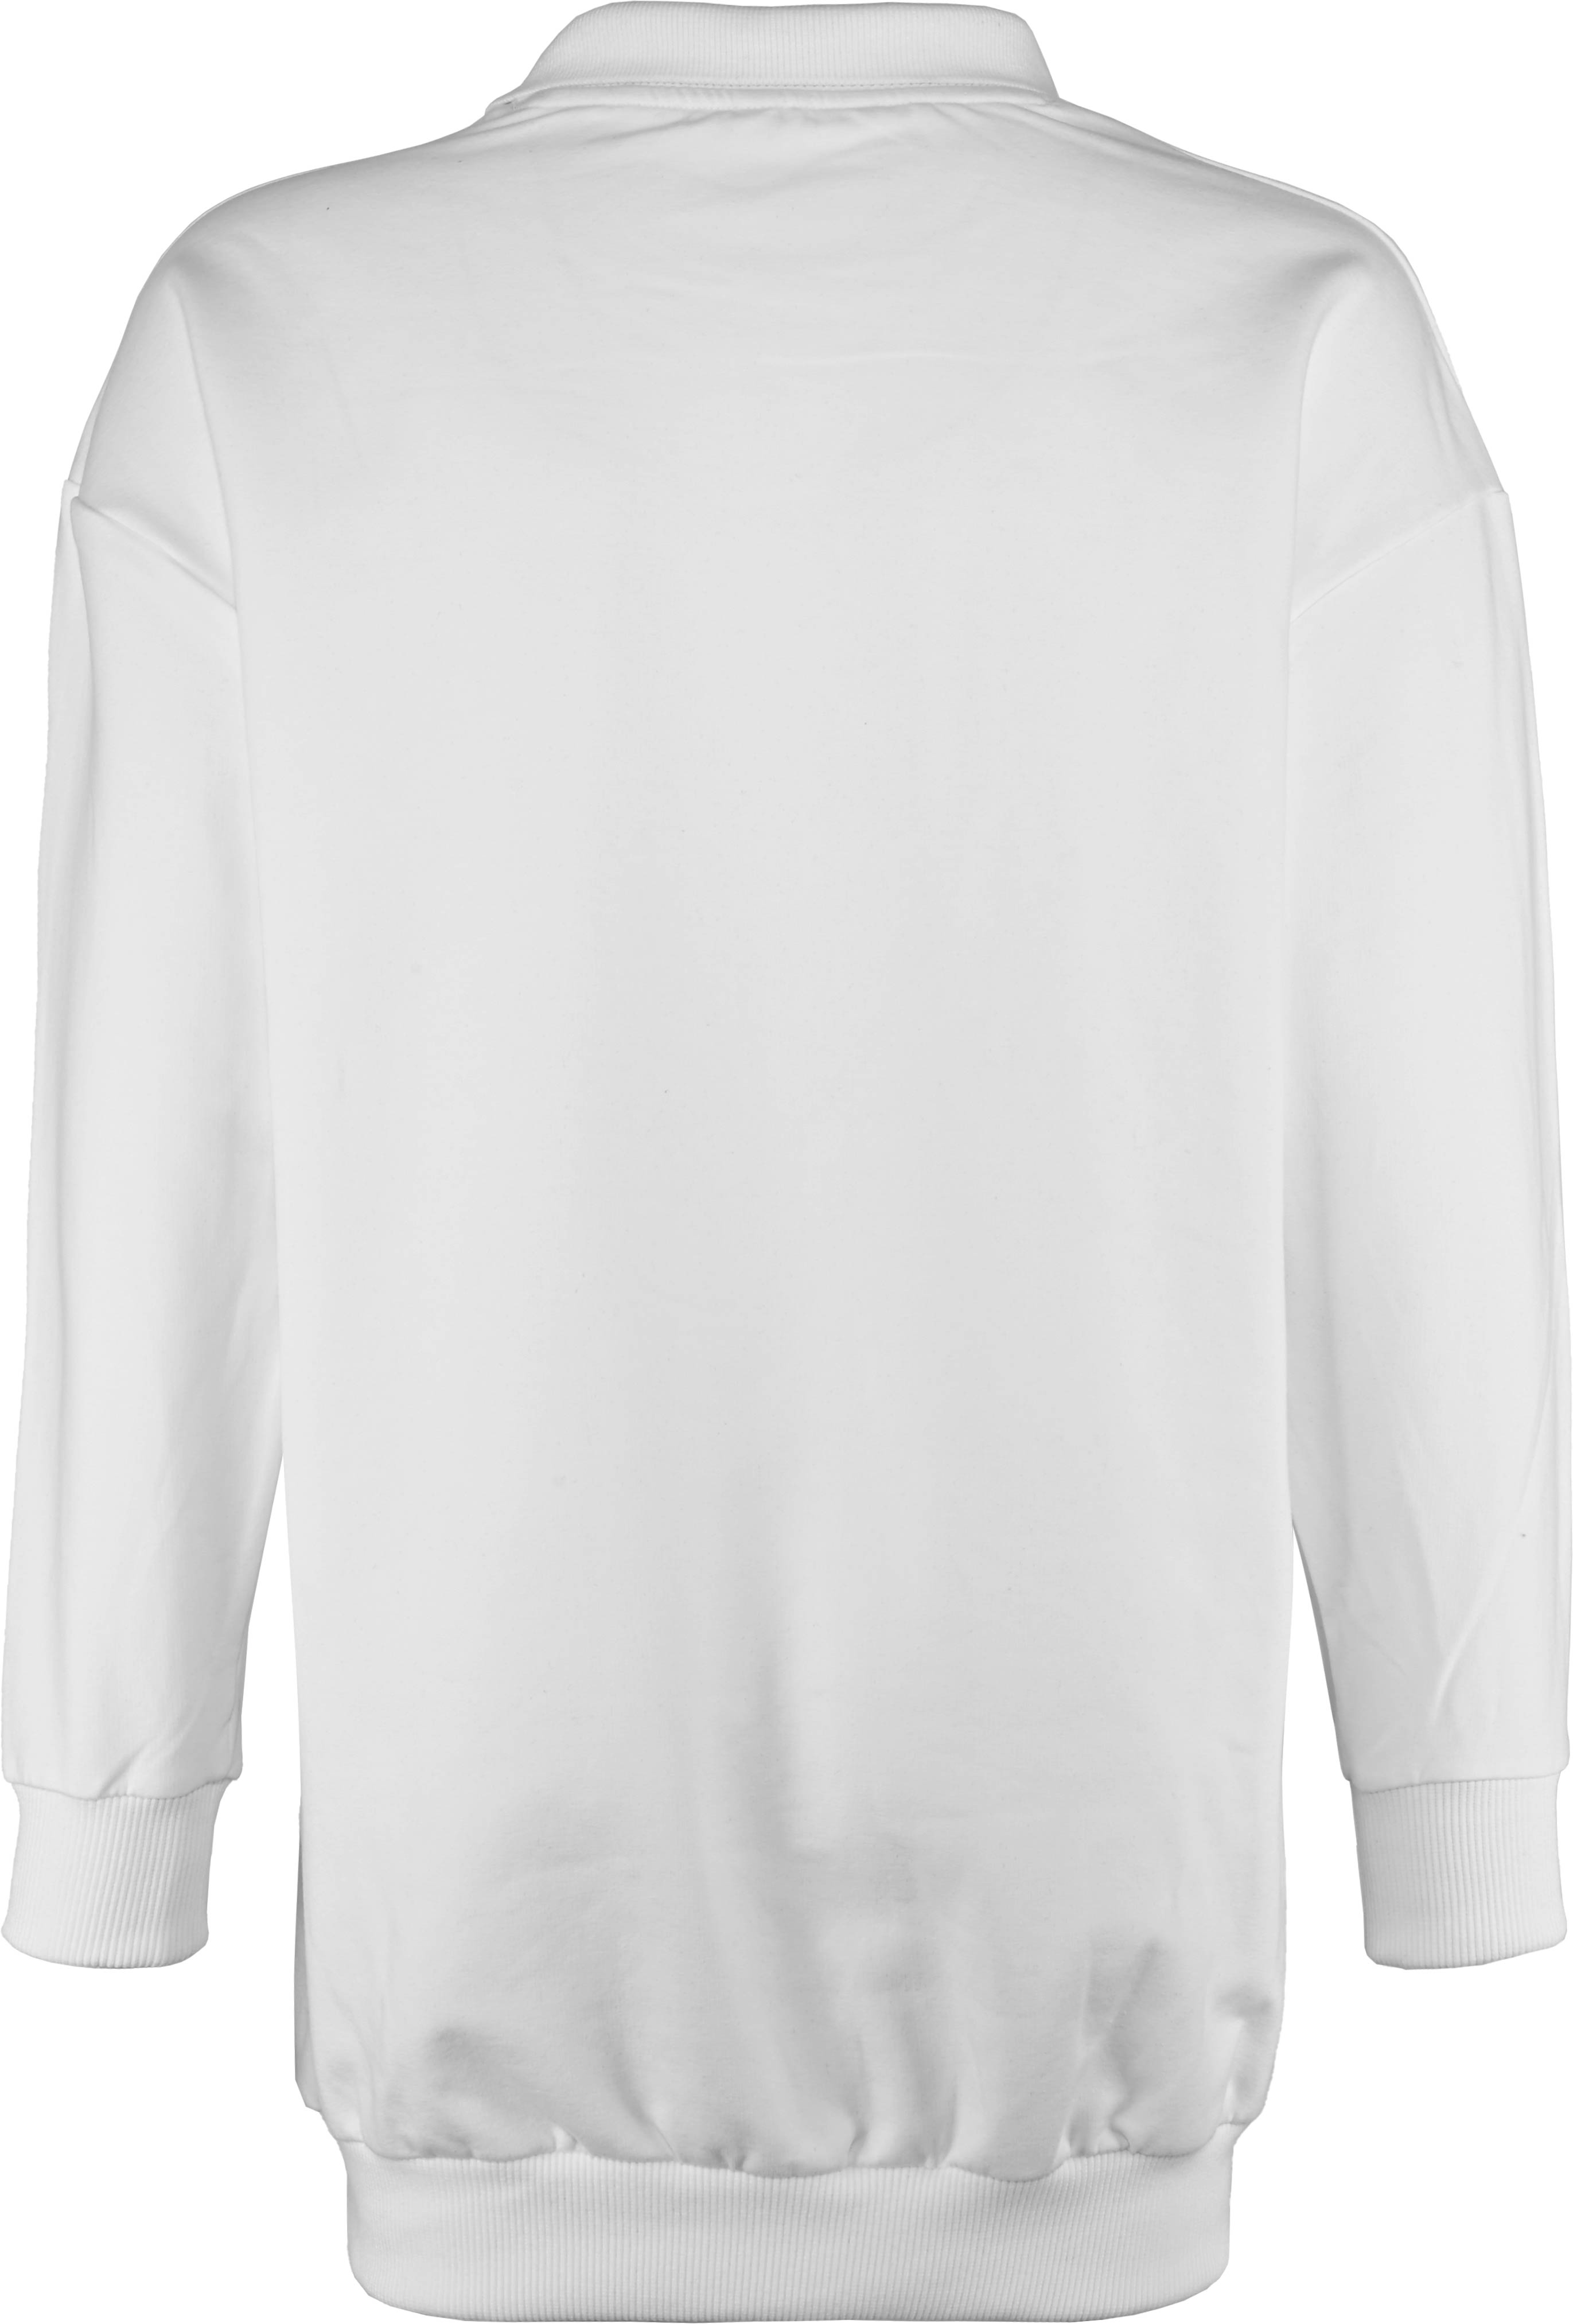 5924-Girls Long Sweatshirt -Paris